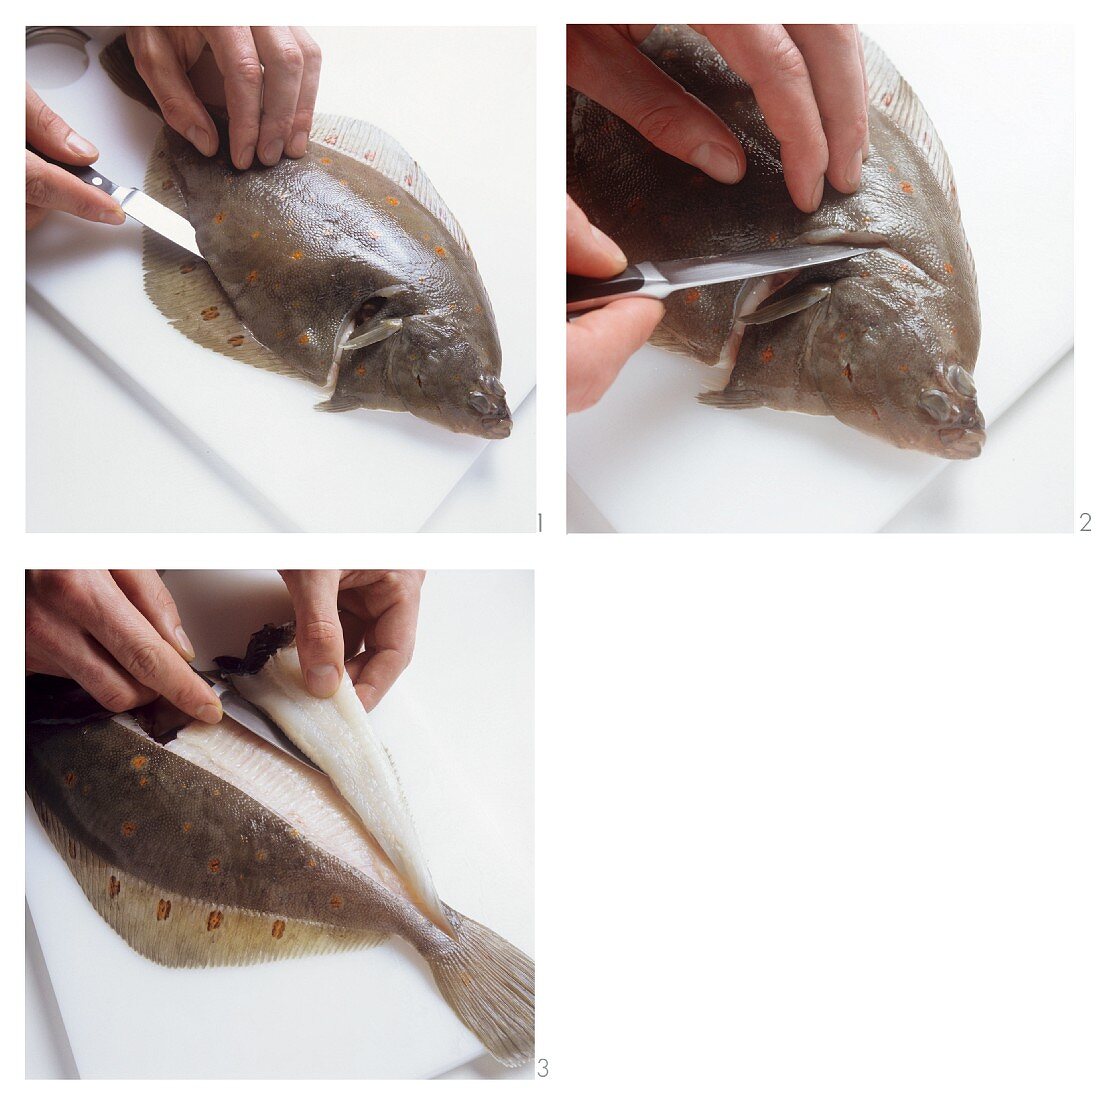 Preparing and filleting flat-fish